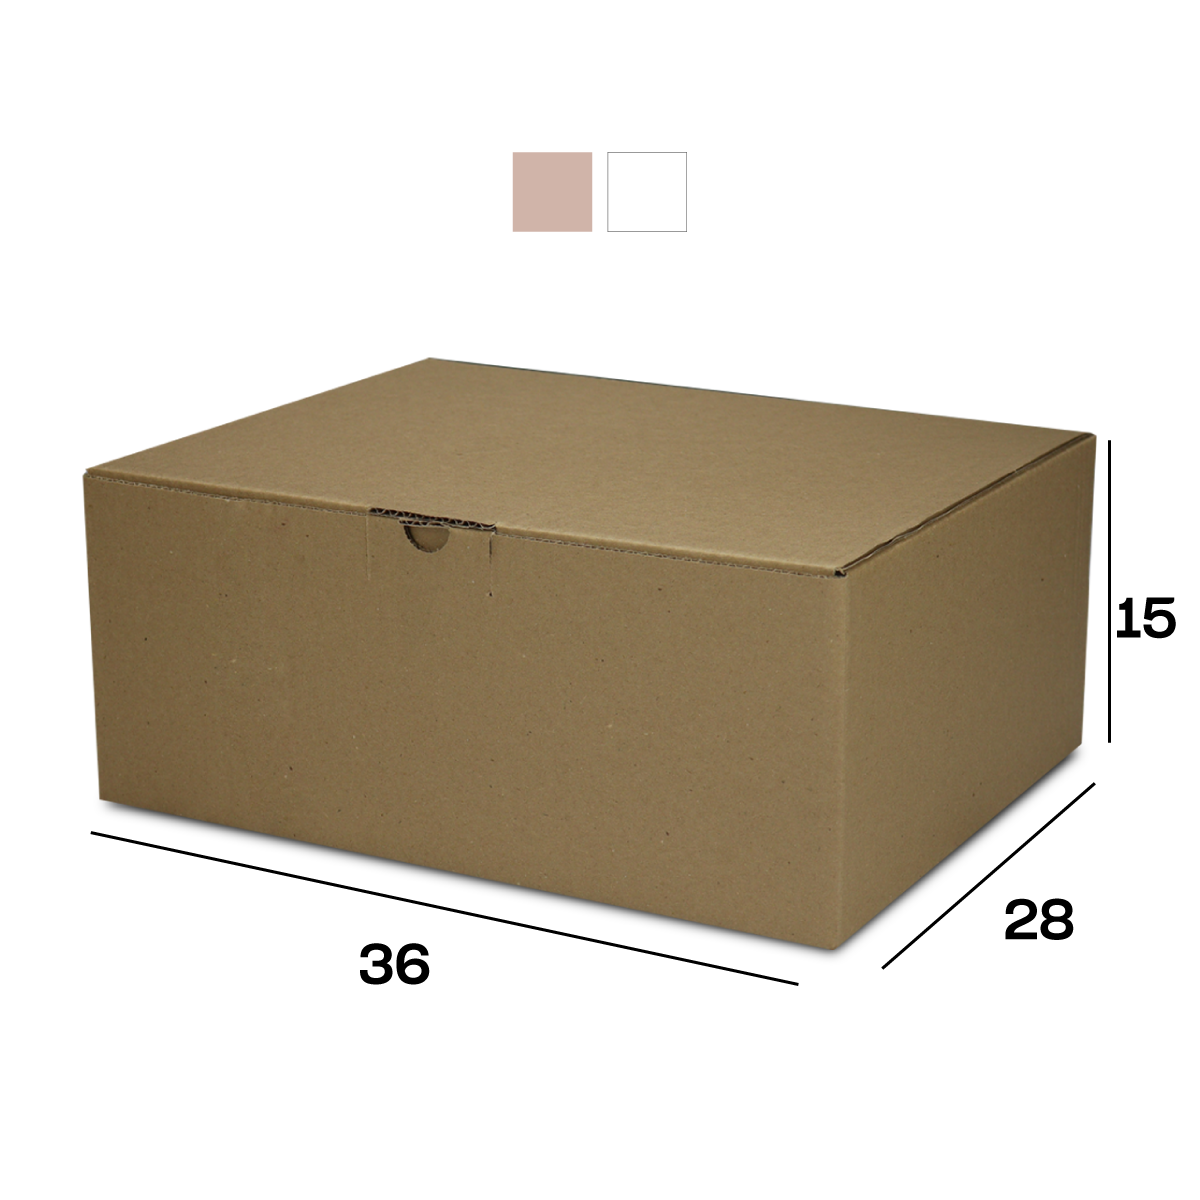 Caixa de Papelão Sedex 08 (36x28x15)  Lisa